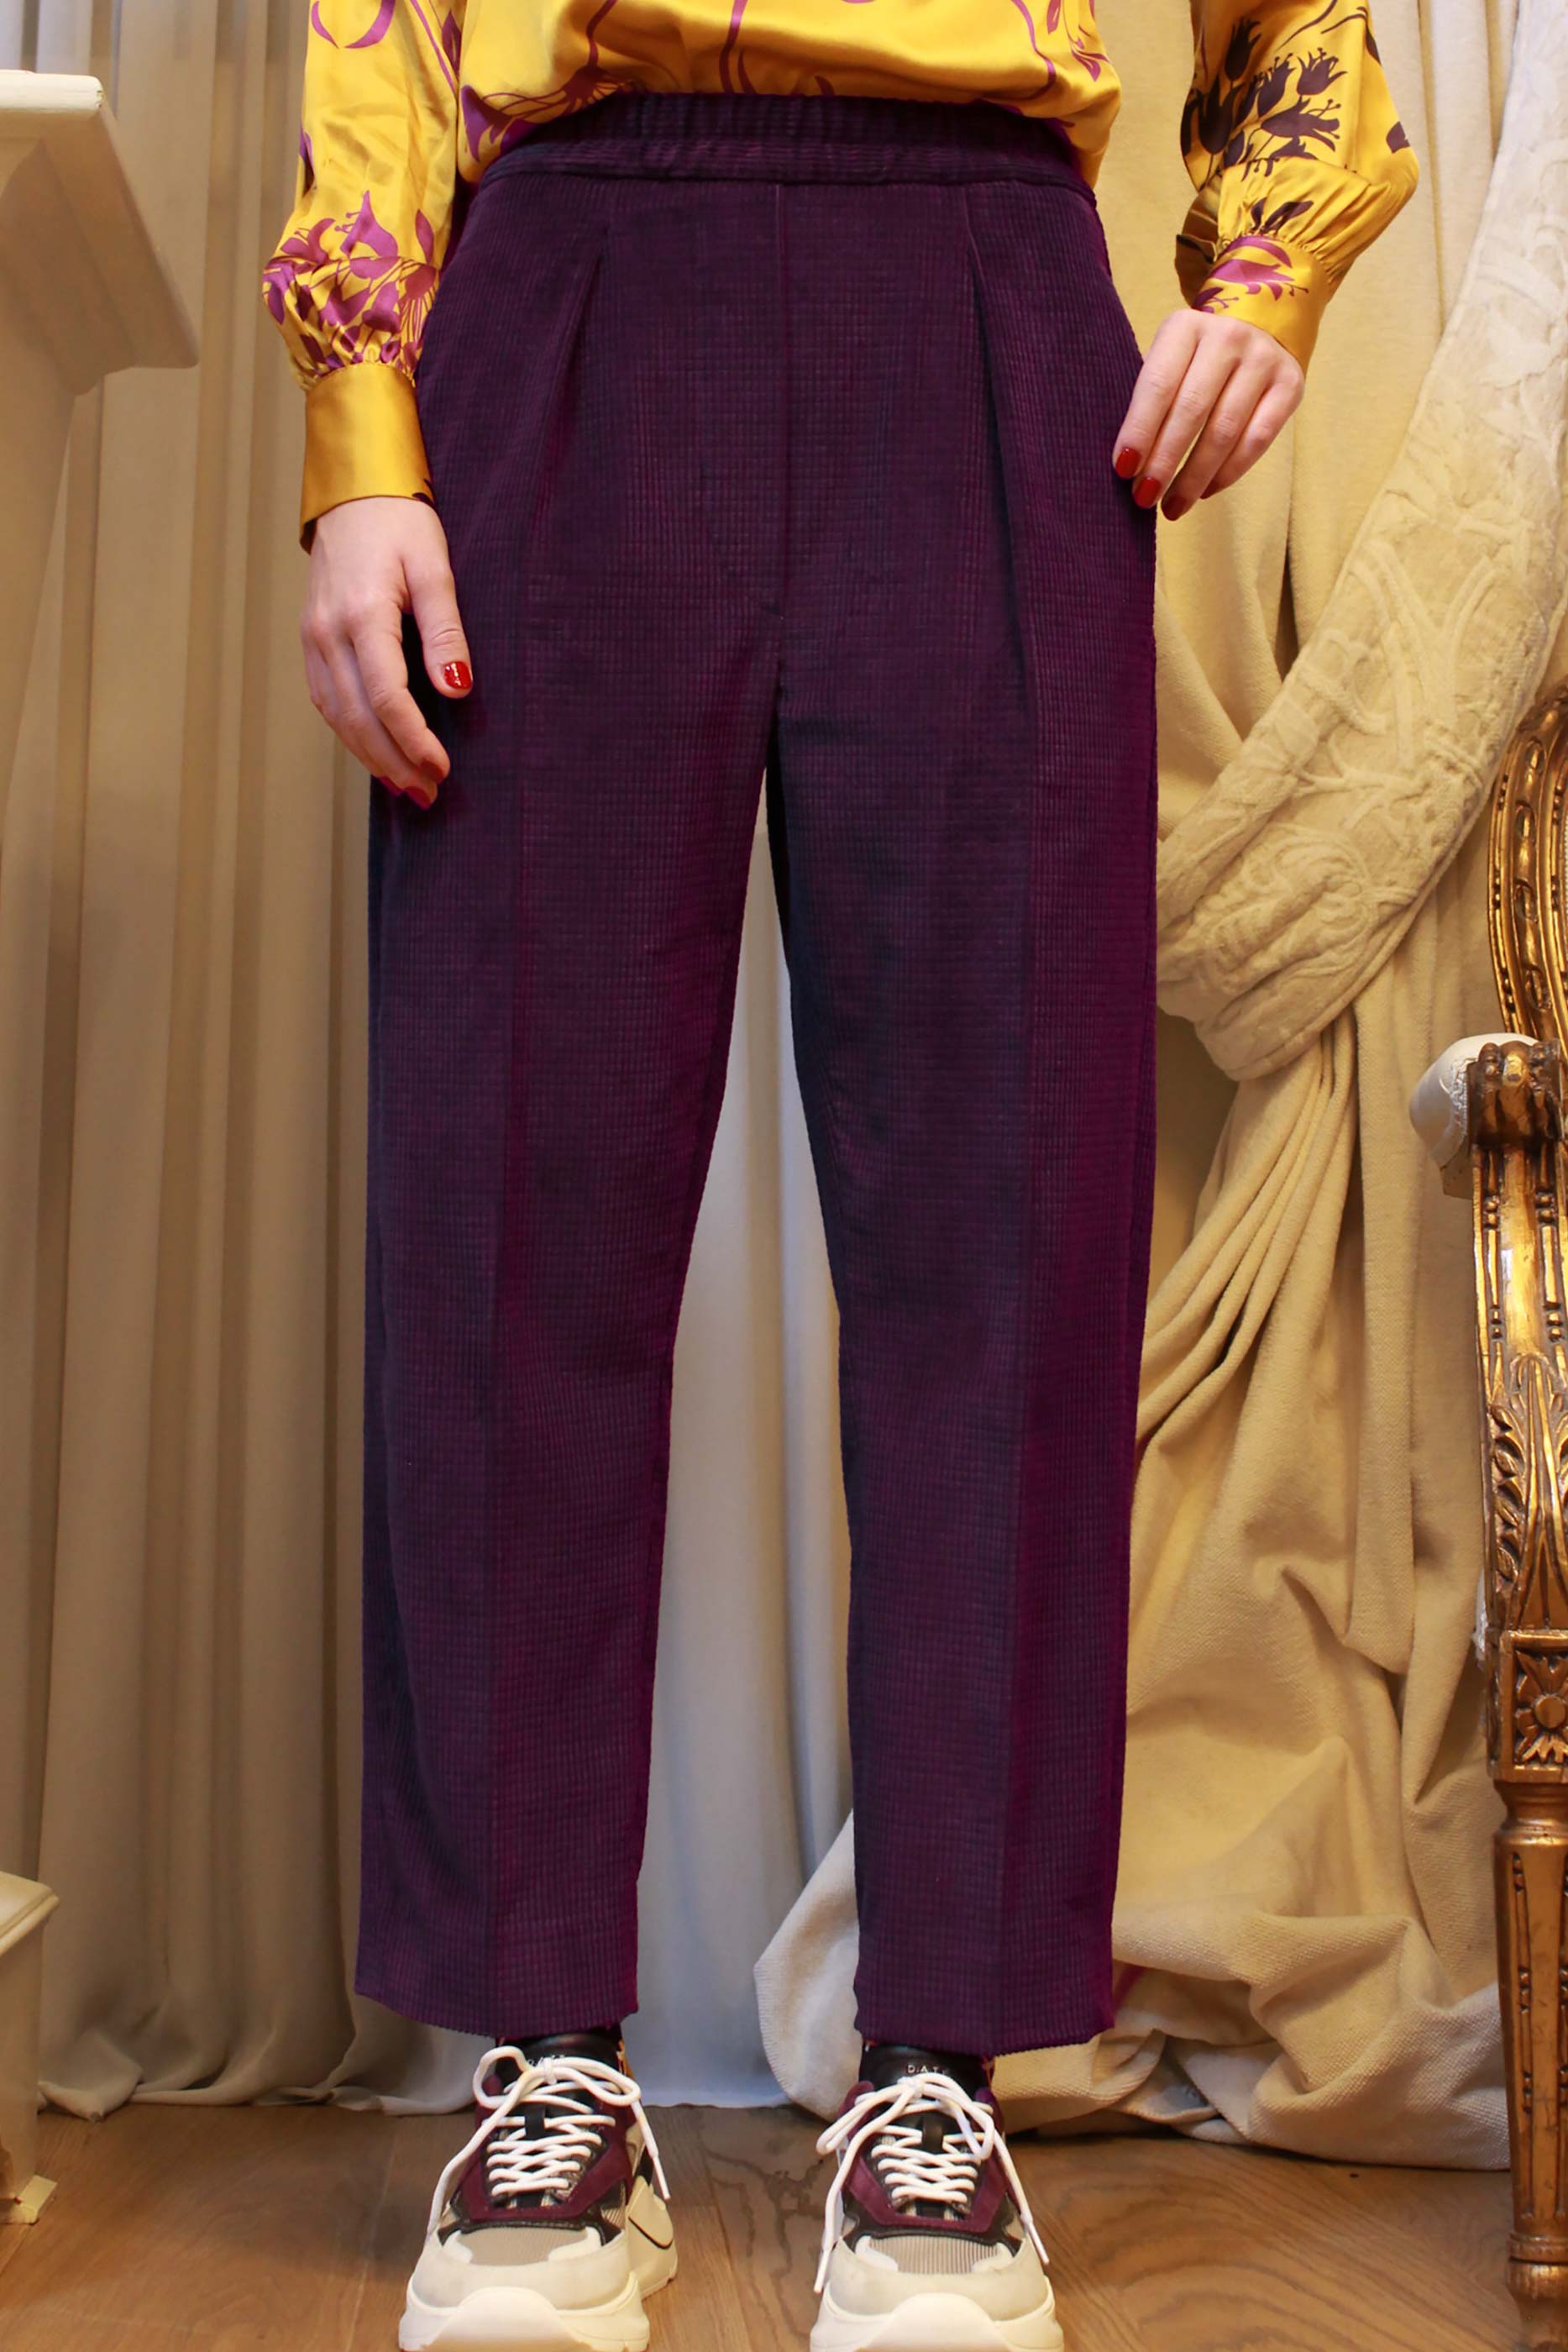 Pantalone in cordurouy viola con pince della maison Tela9 taglio cropped fw23